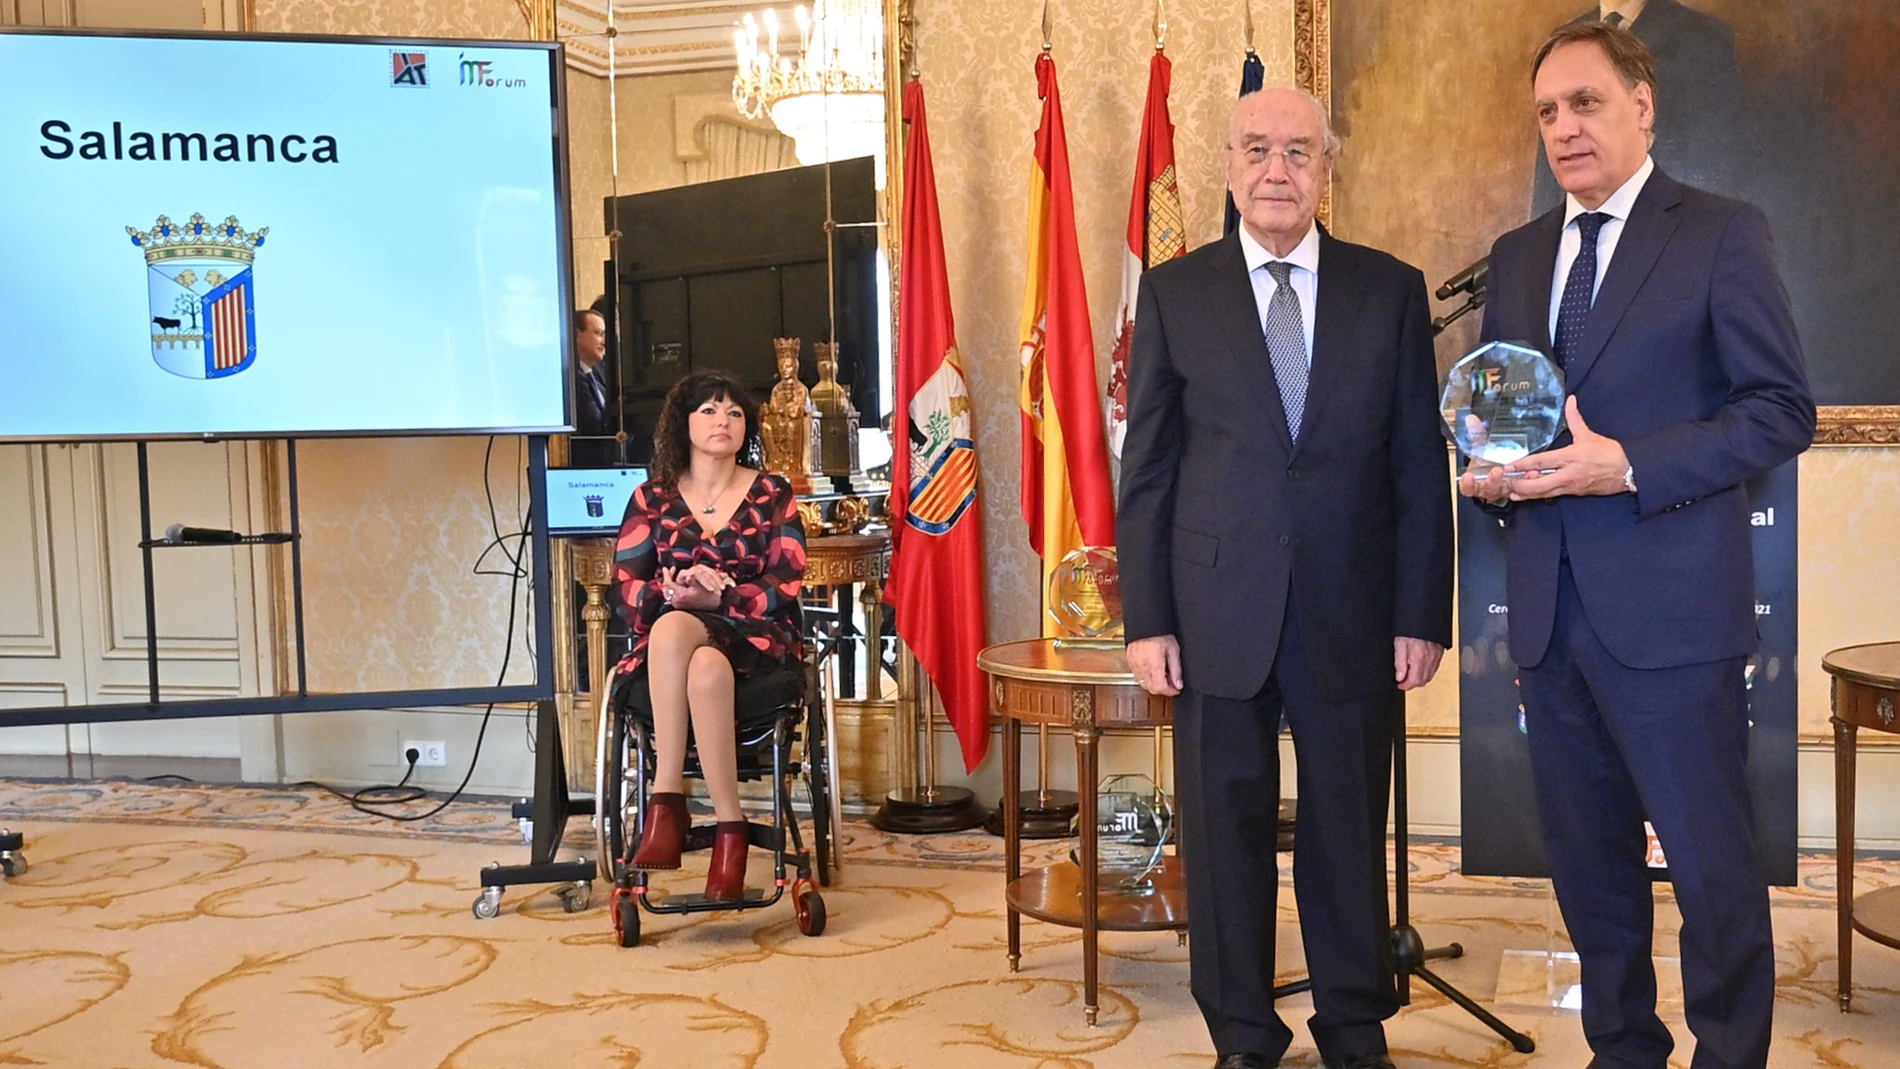 El alcalde de Salamanca, Carlos García Carbayo, recibe el Premio Visión Zero Municipal